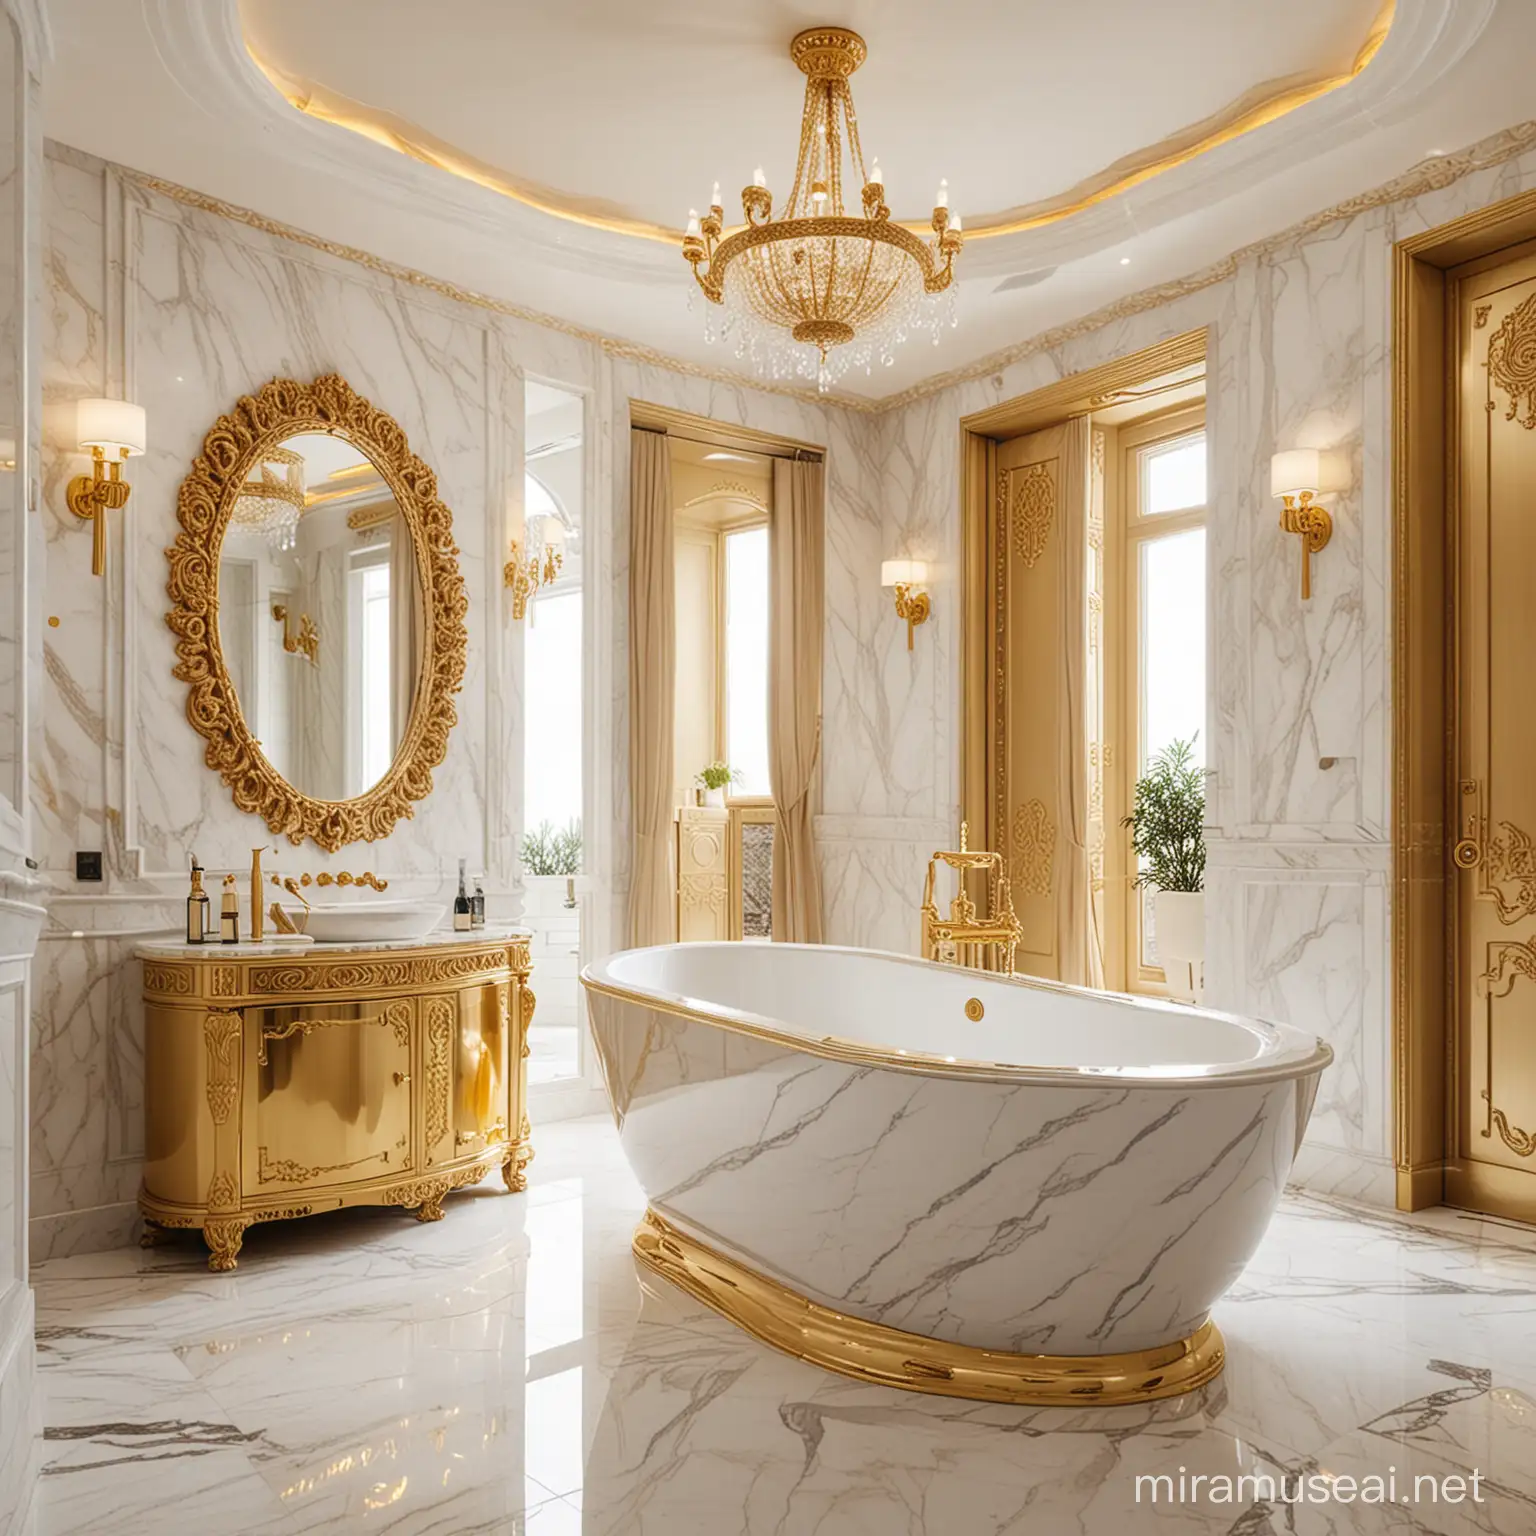 Luxurious DubaiStyle Bathroom with GoldPlated Bathtub